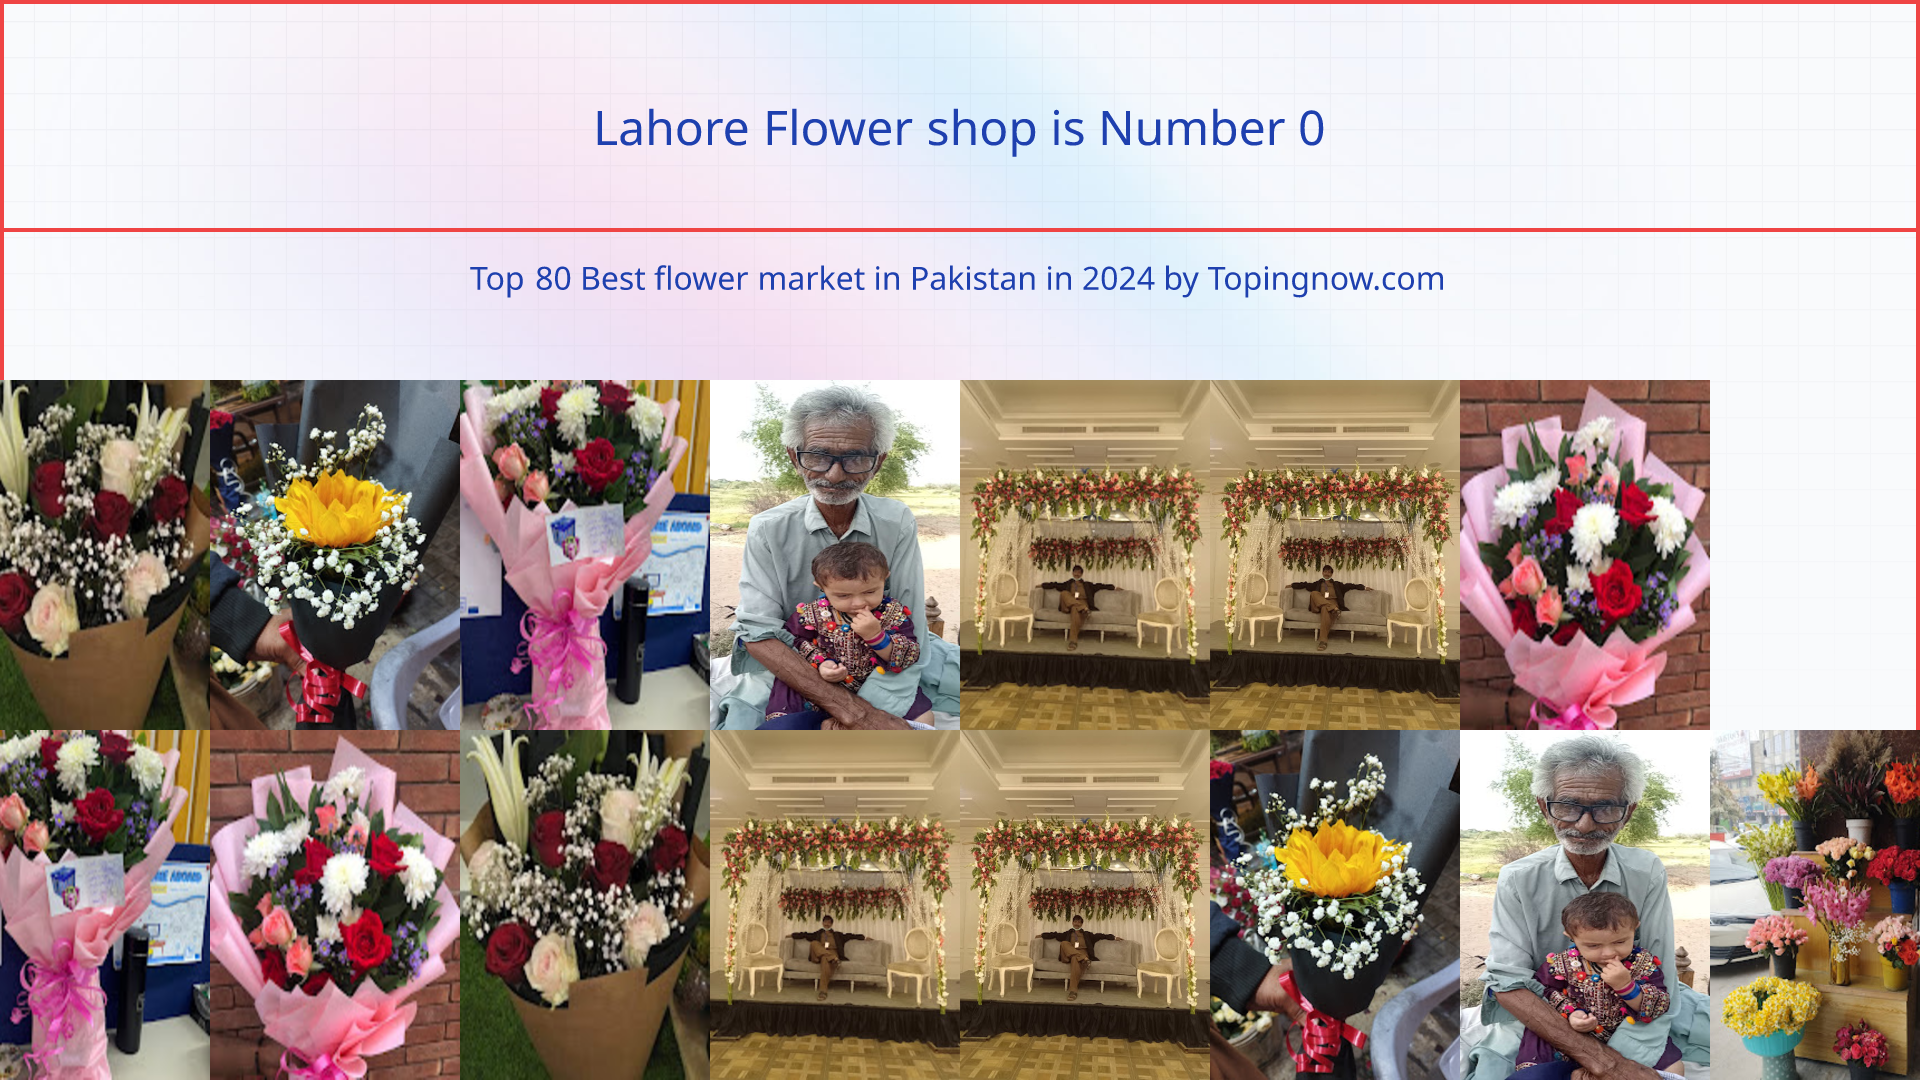 Lahore Flower shop: Top 80 Best flower market in Pakistan in 2024